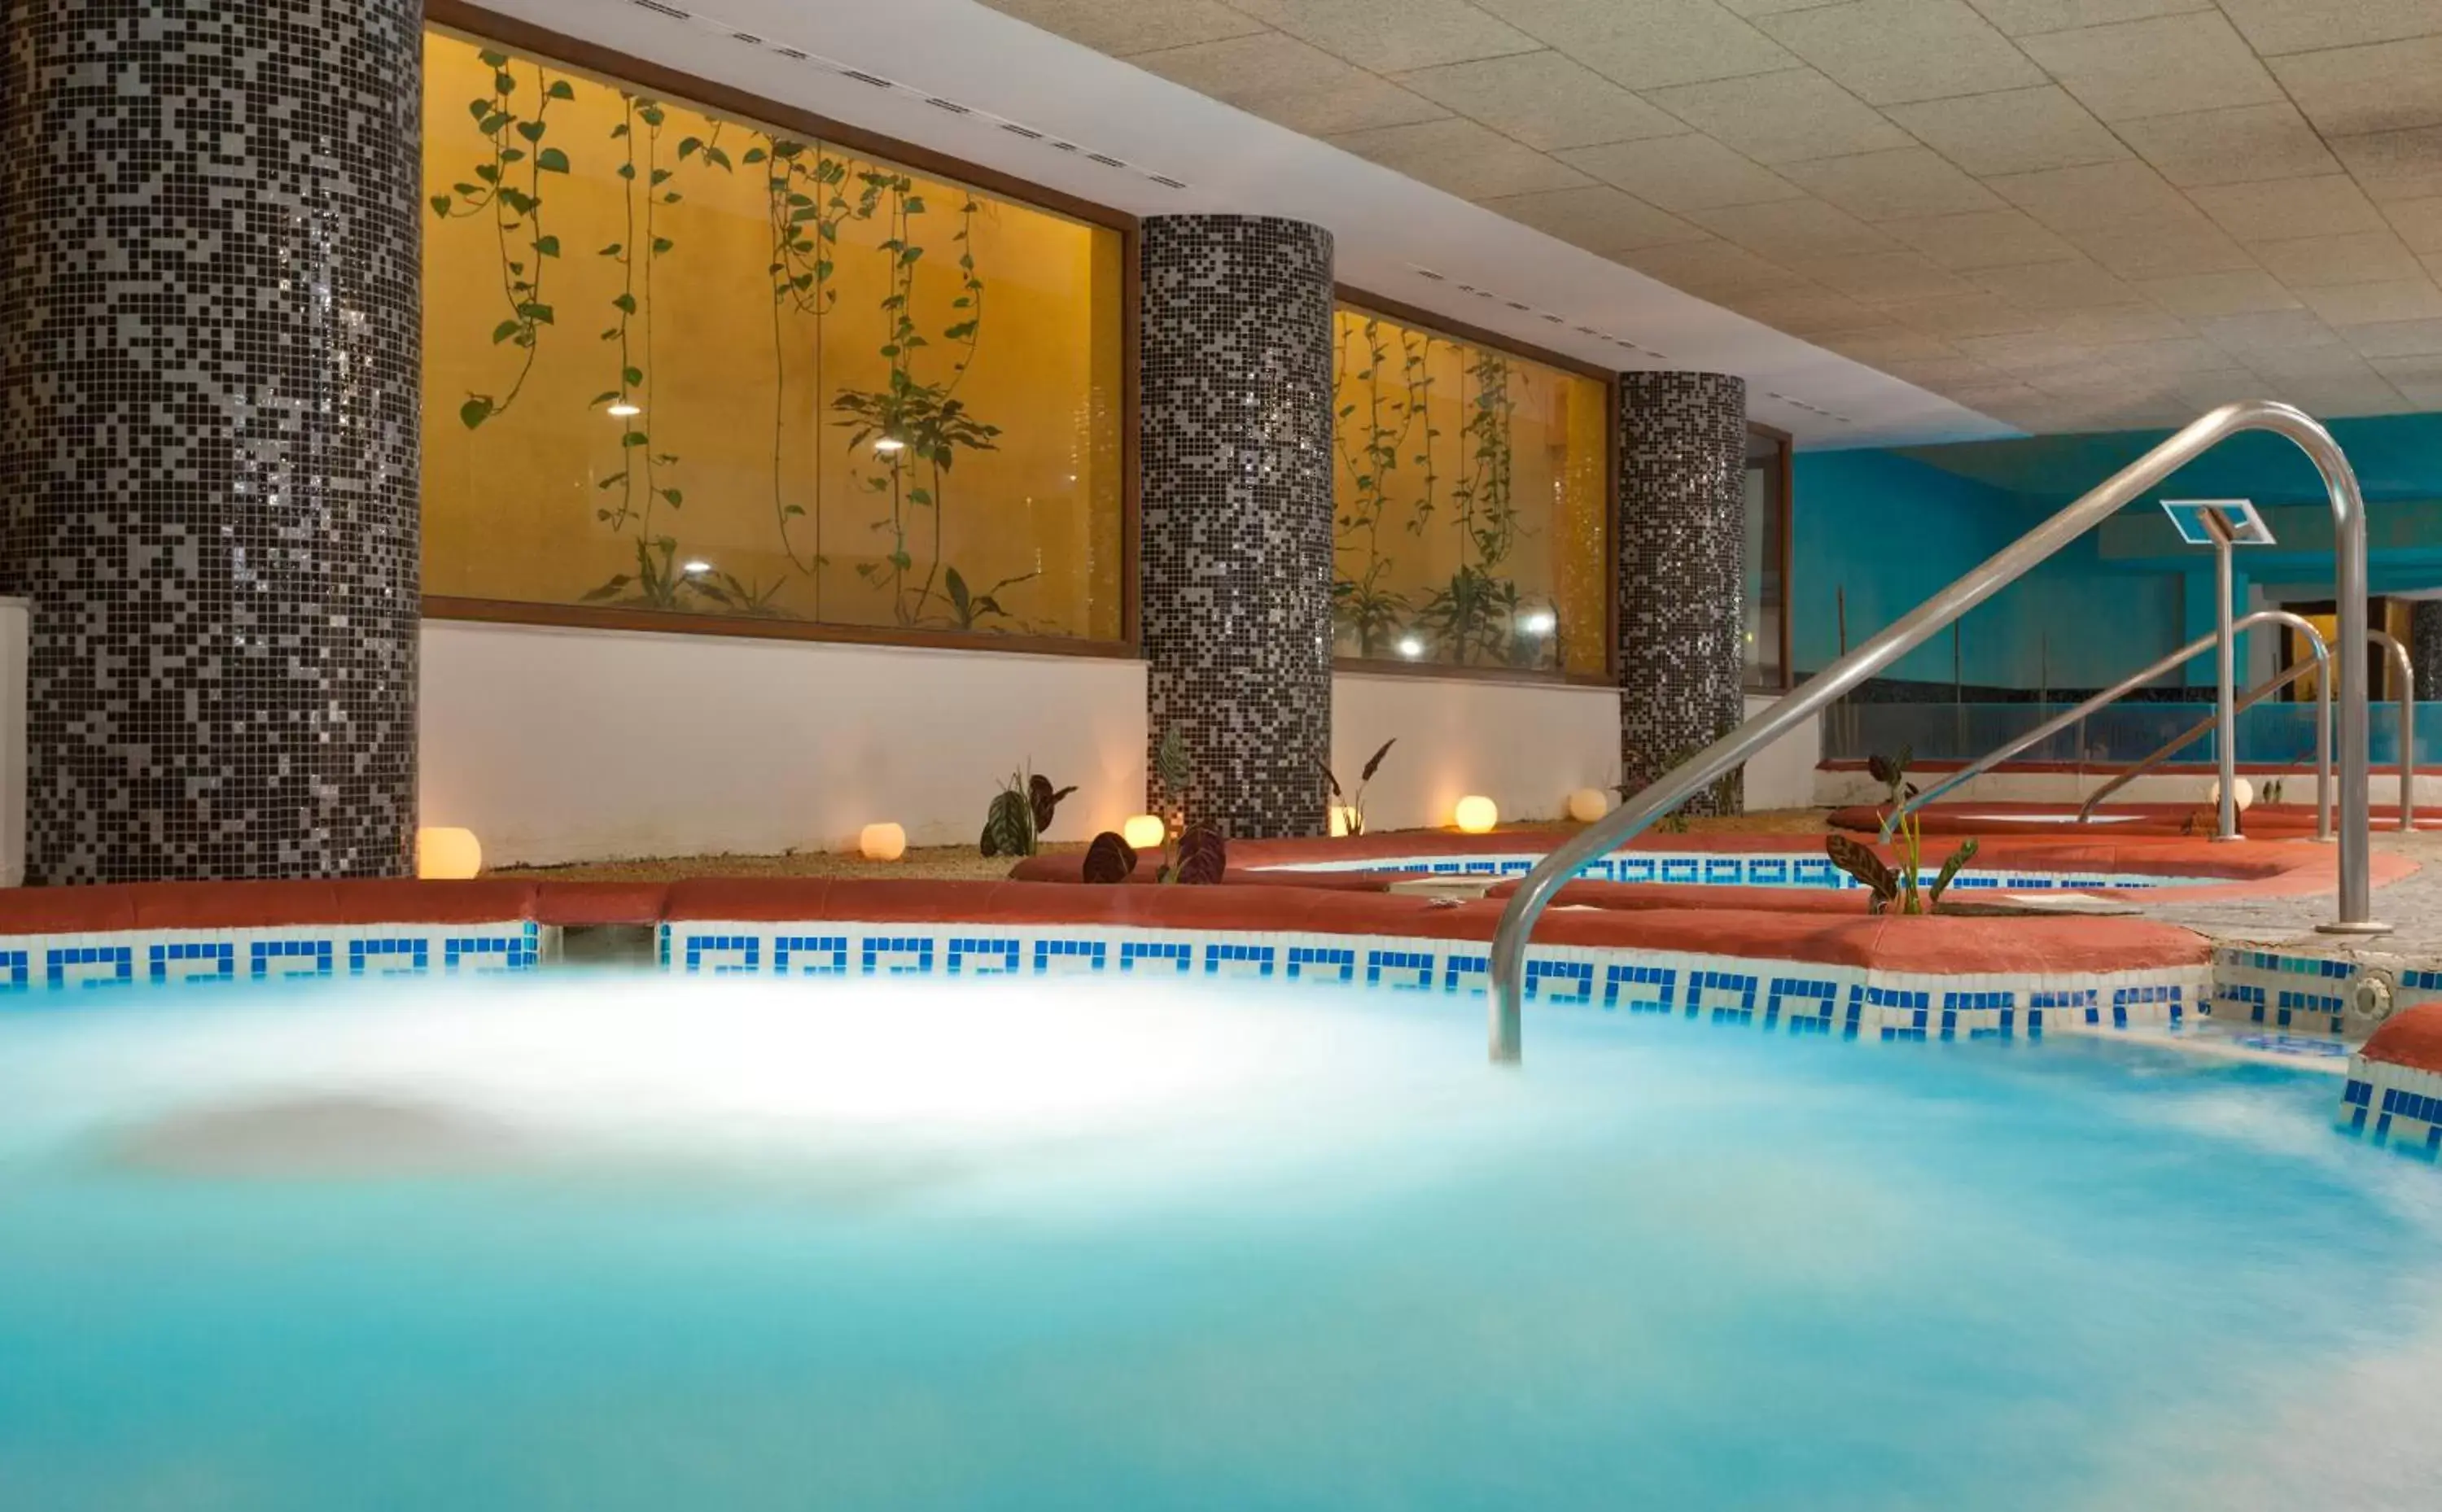 Spa and wellness centre/facilities, Swimming Pool in Senator Marbella Spa Hotel